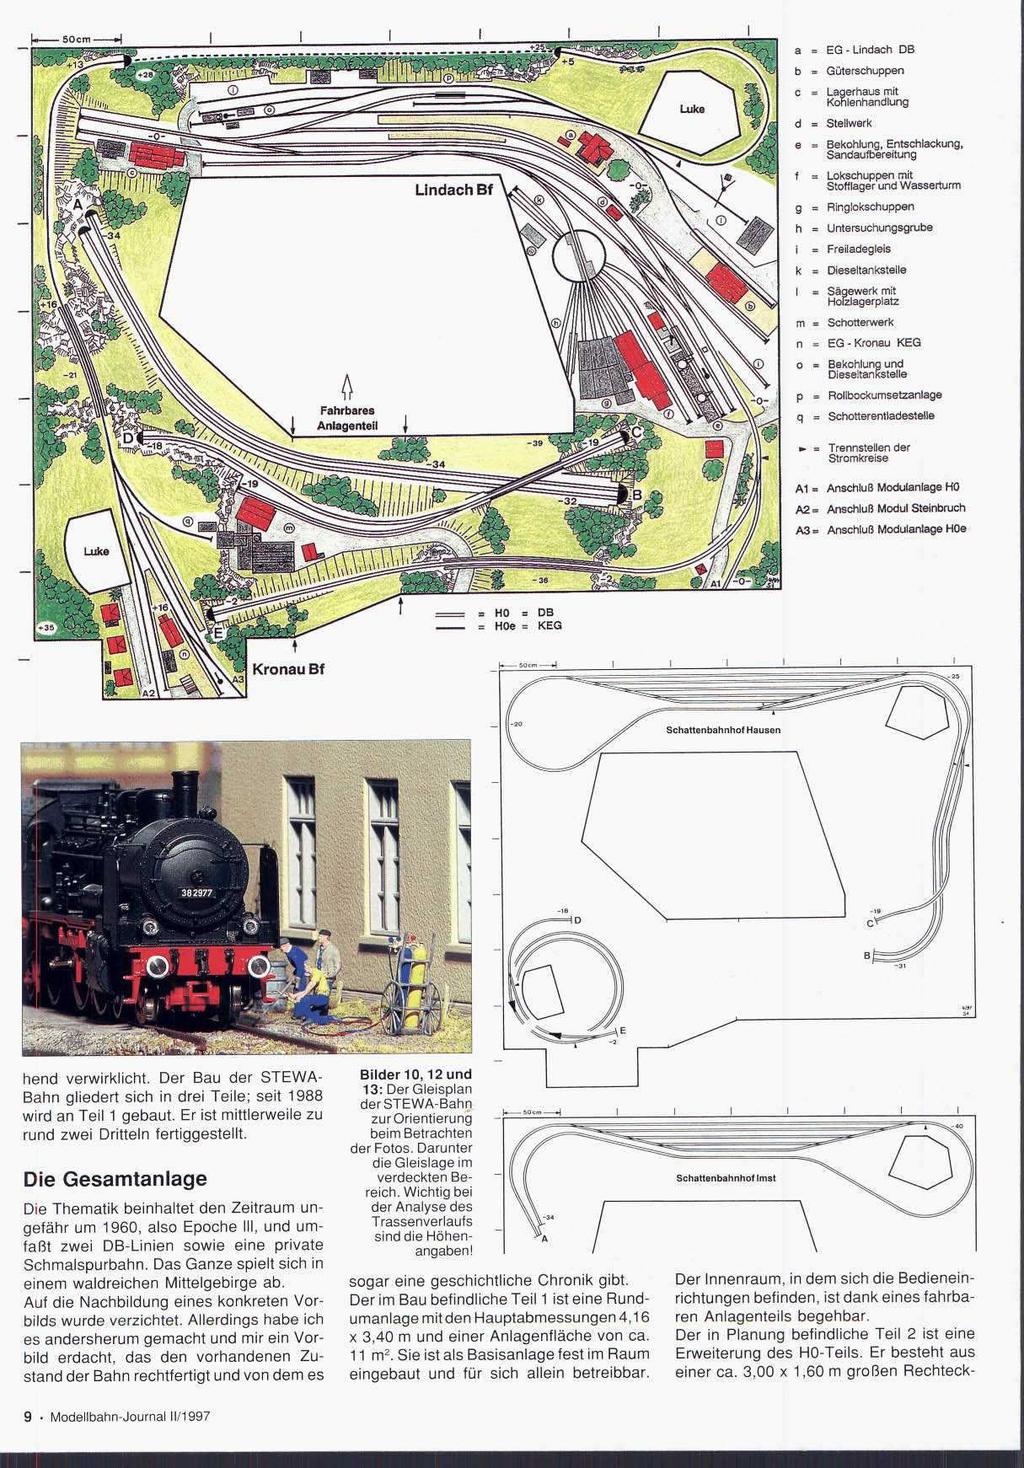 ~~ Kronau Bf hend verwirklicht. Der Bau der STEWA- Bahn gliedert sich in drei Teile; seit 1988 wird an Teil 1 gebaut. Er ist mittlerweile zu rund zwei Dritteln fertiggestellt.